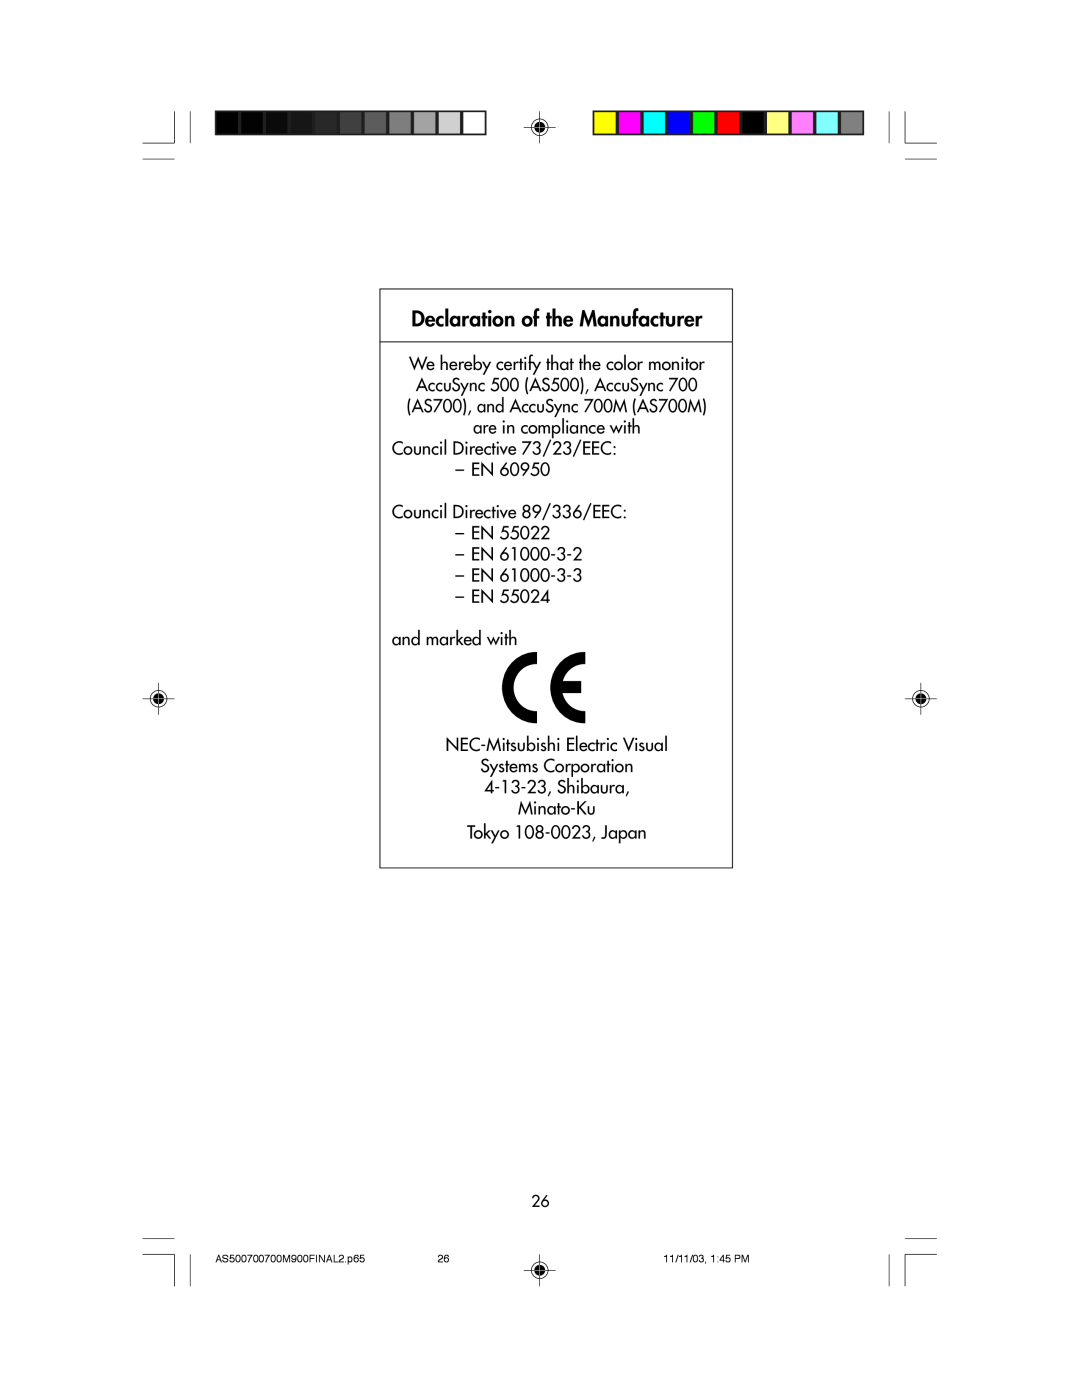 NEC 500, 700, 700M, 900 Declaration of the Manufacturer, Ð EN Ð EN Ð EN and marked with NEC-Mitsubishi Electric Visual 